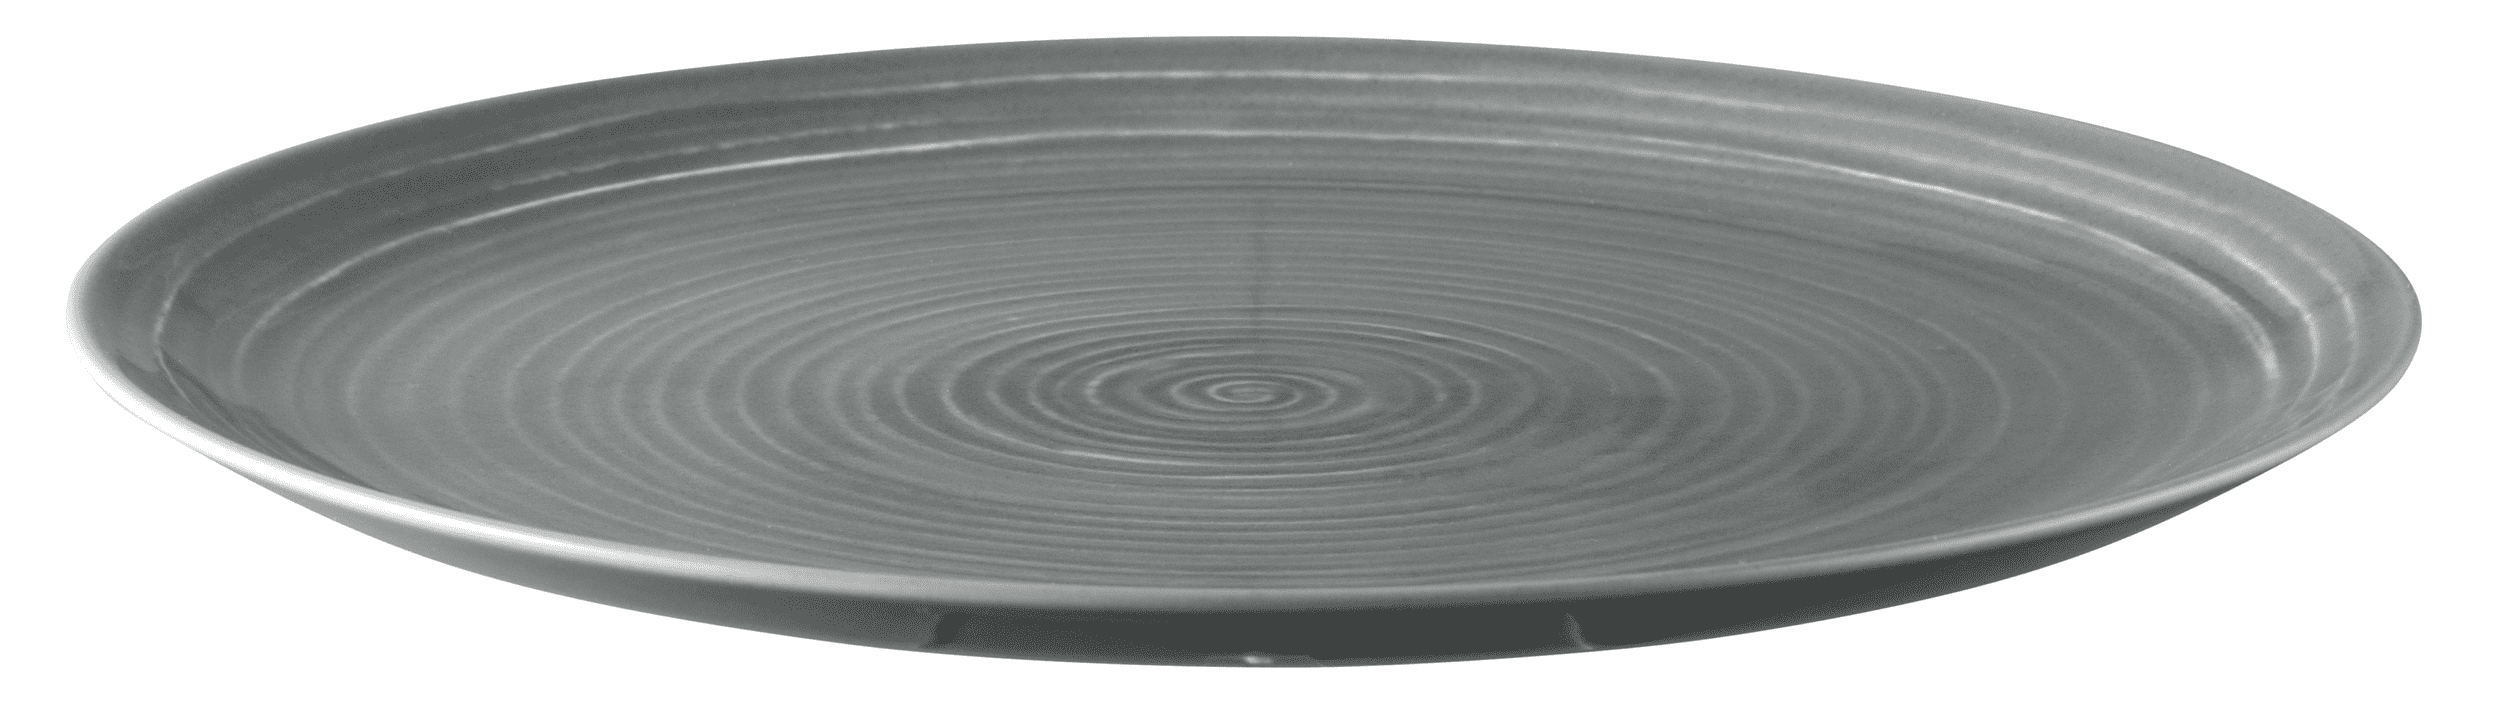 Seltmann Porzellan Terra Perlgrau Speiseteller rund 27,5 cm